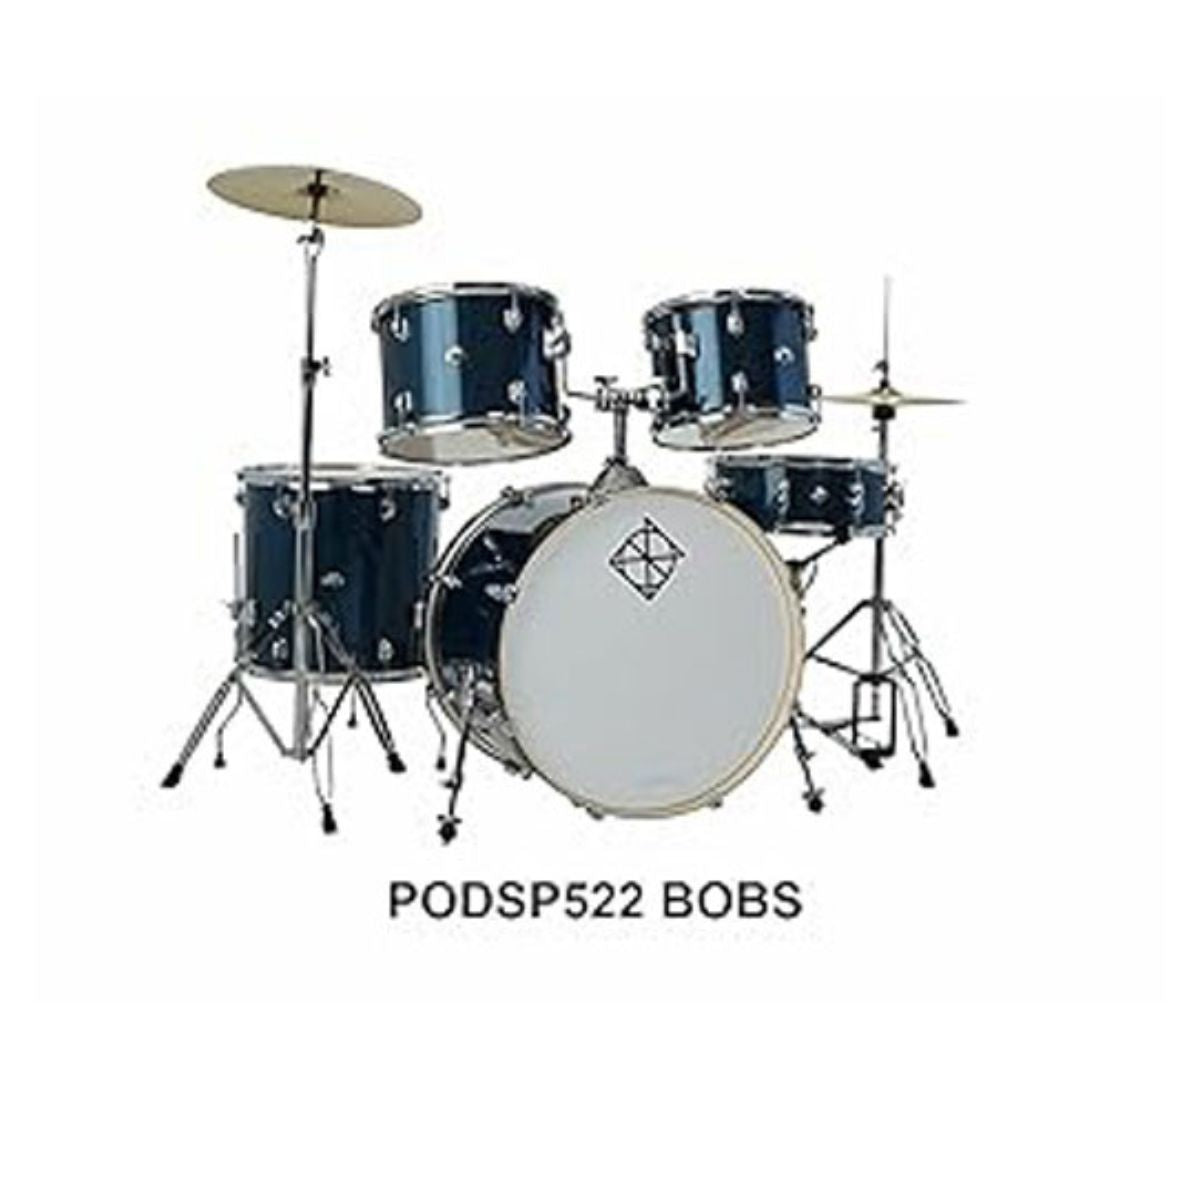 Dixon Drums Spark Standard Series Acoustic Drum (full kit) 5PCs Set incl Hardware - Ocean Blue Sparkle